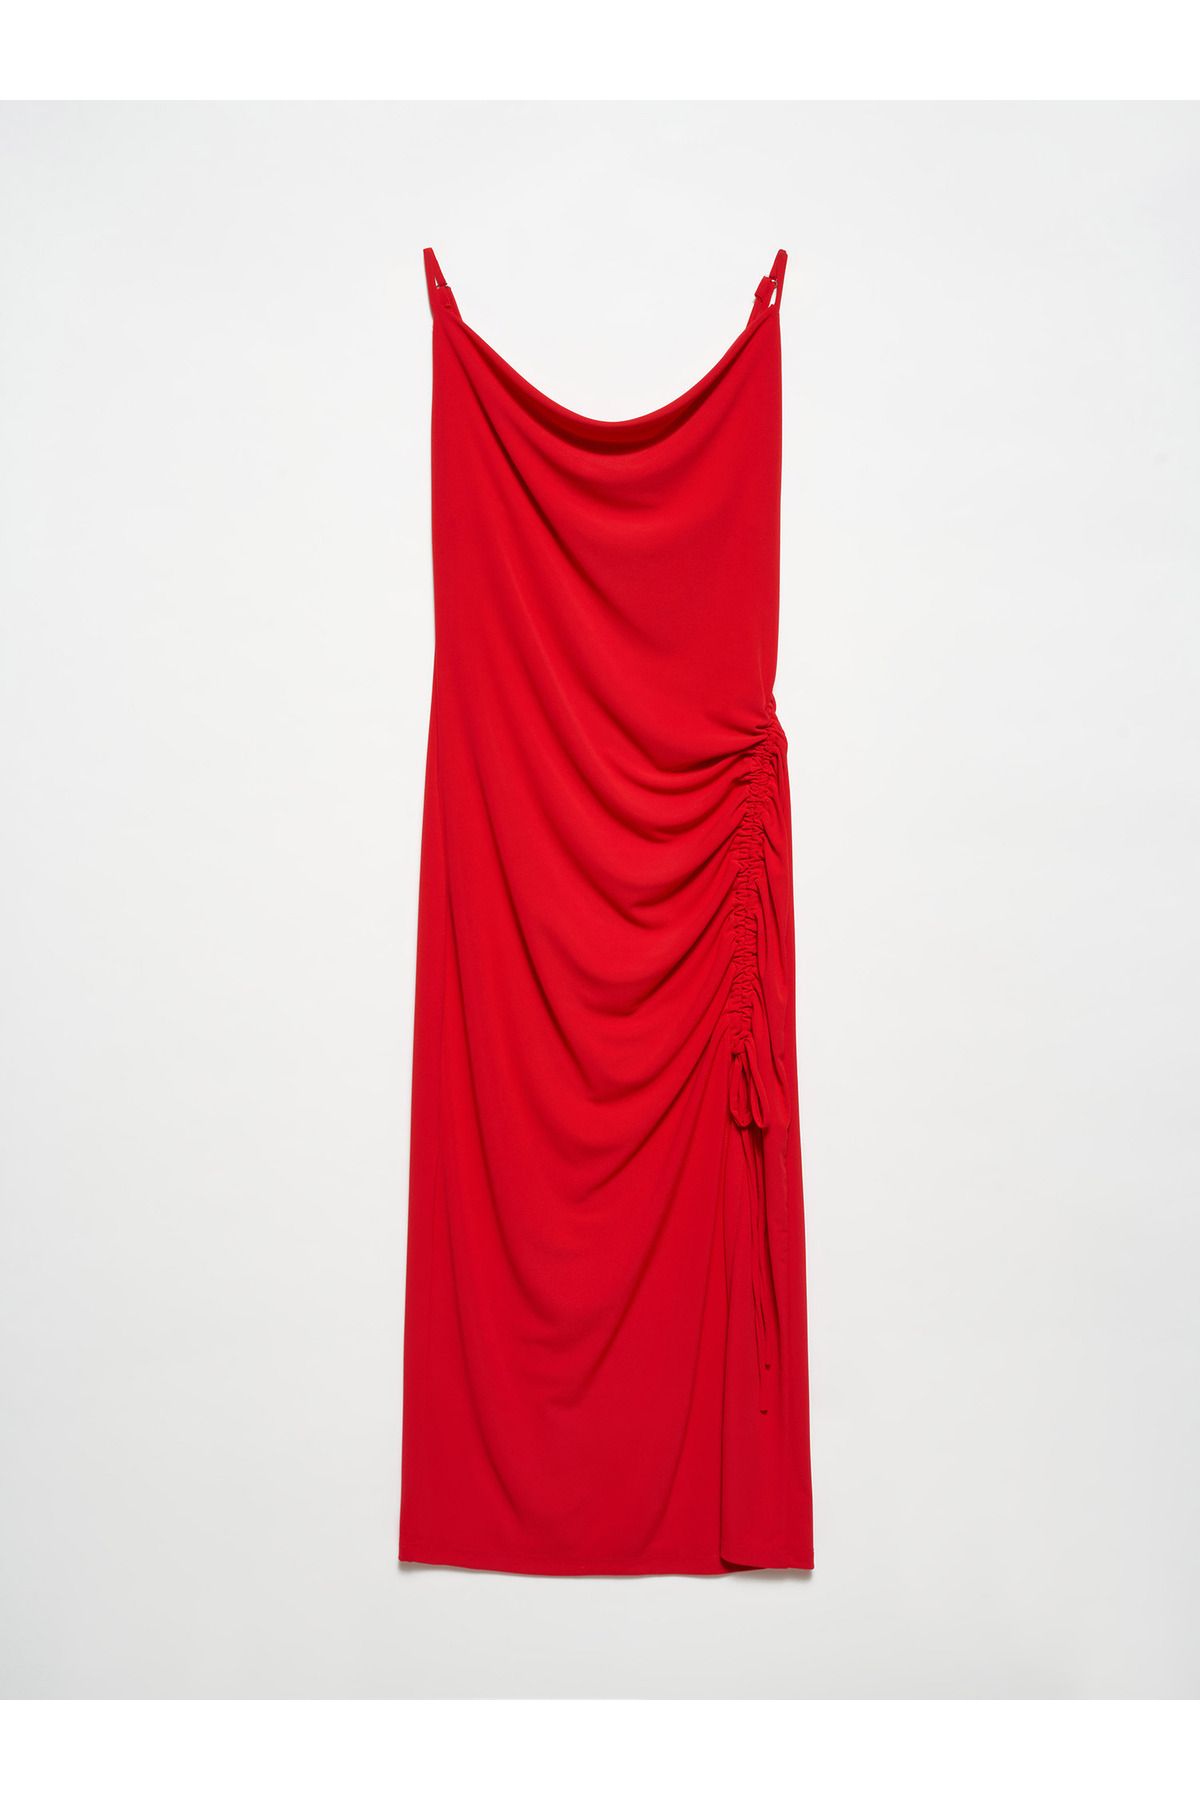 Dilvin 90457 Degaje Yaka Büzgülü Elbise-Kırmızı